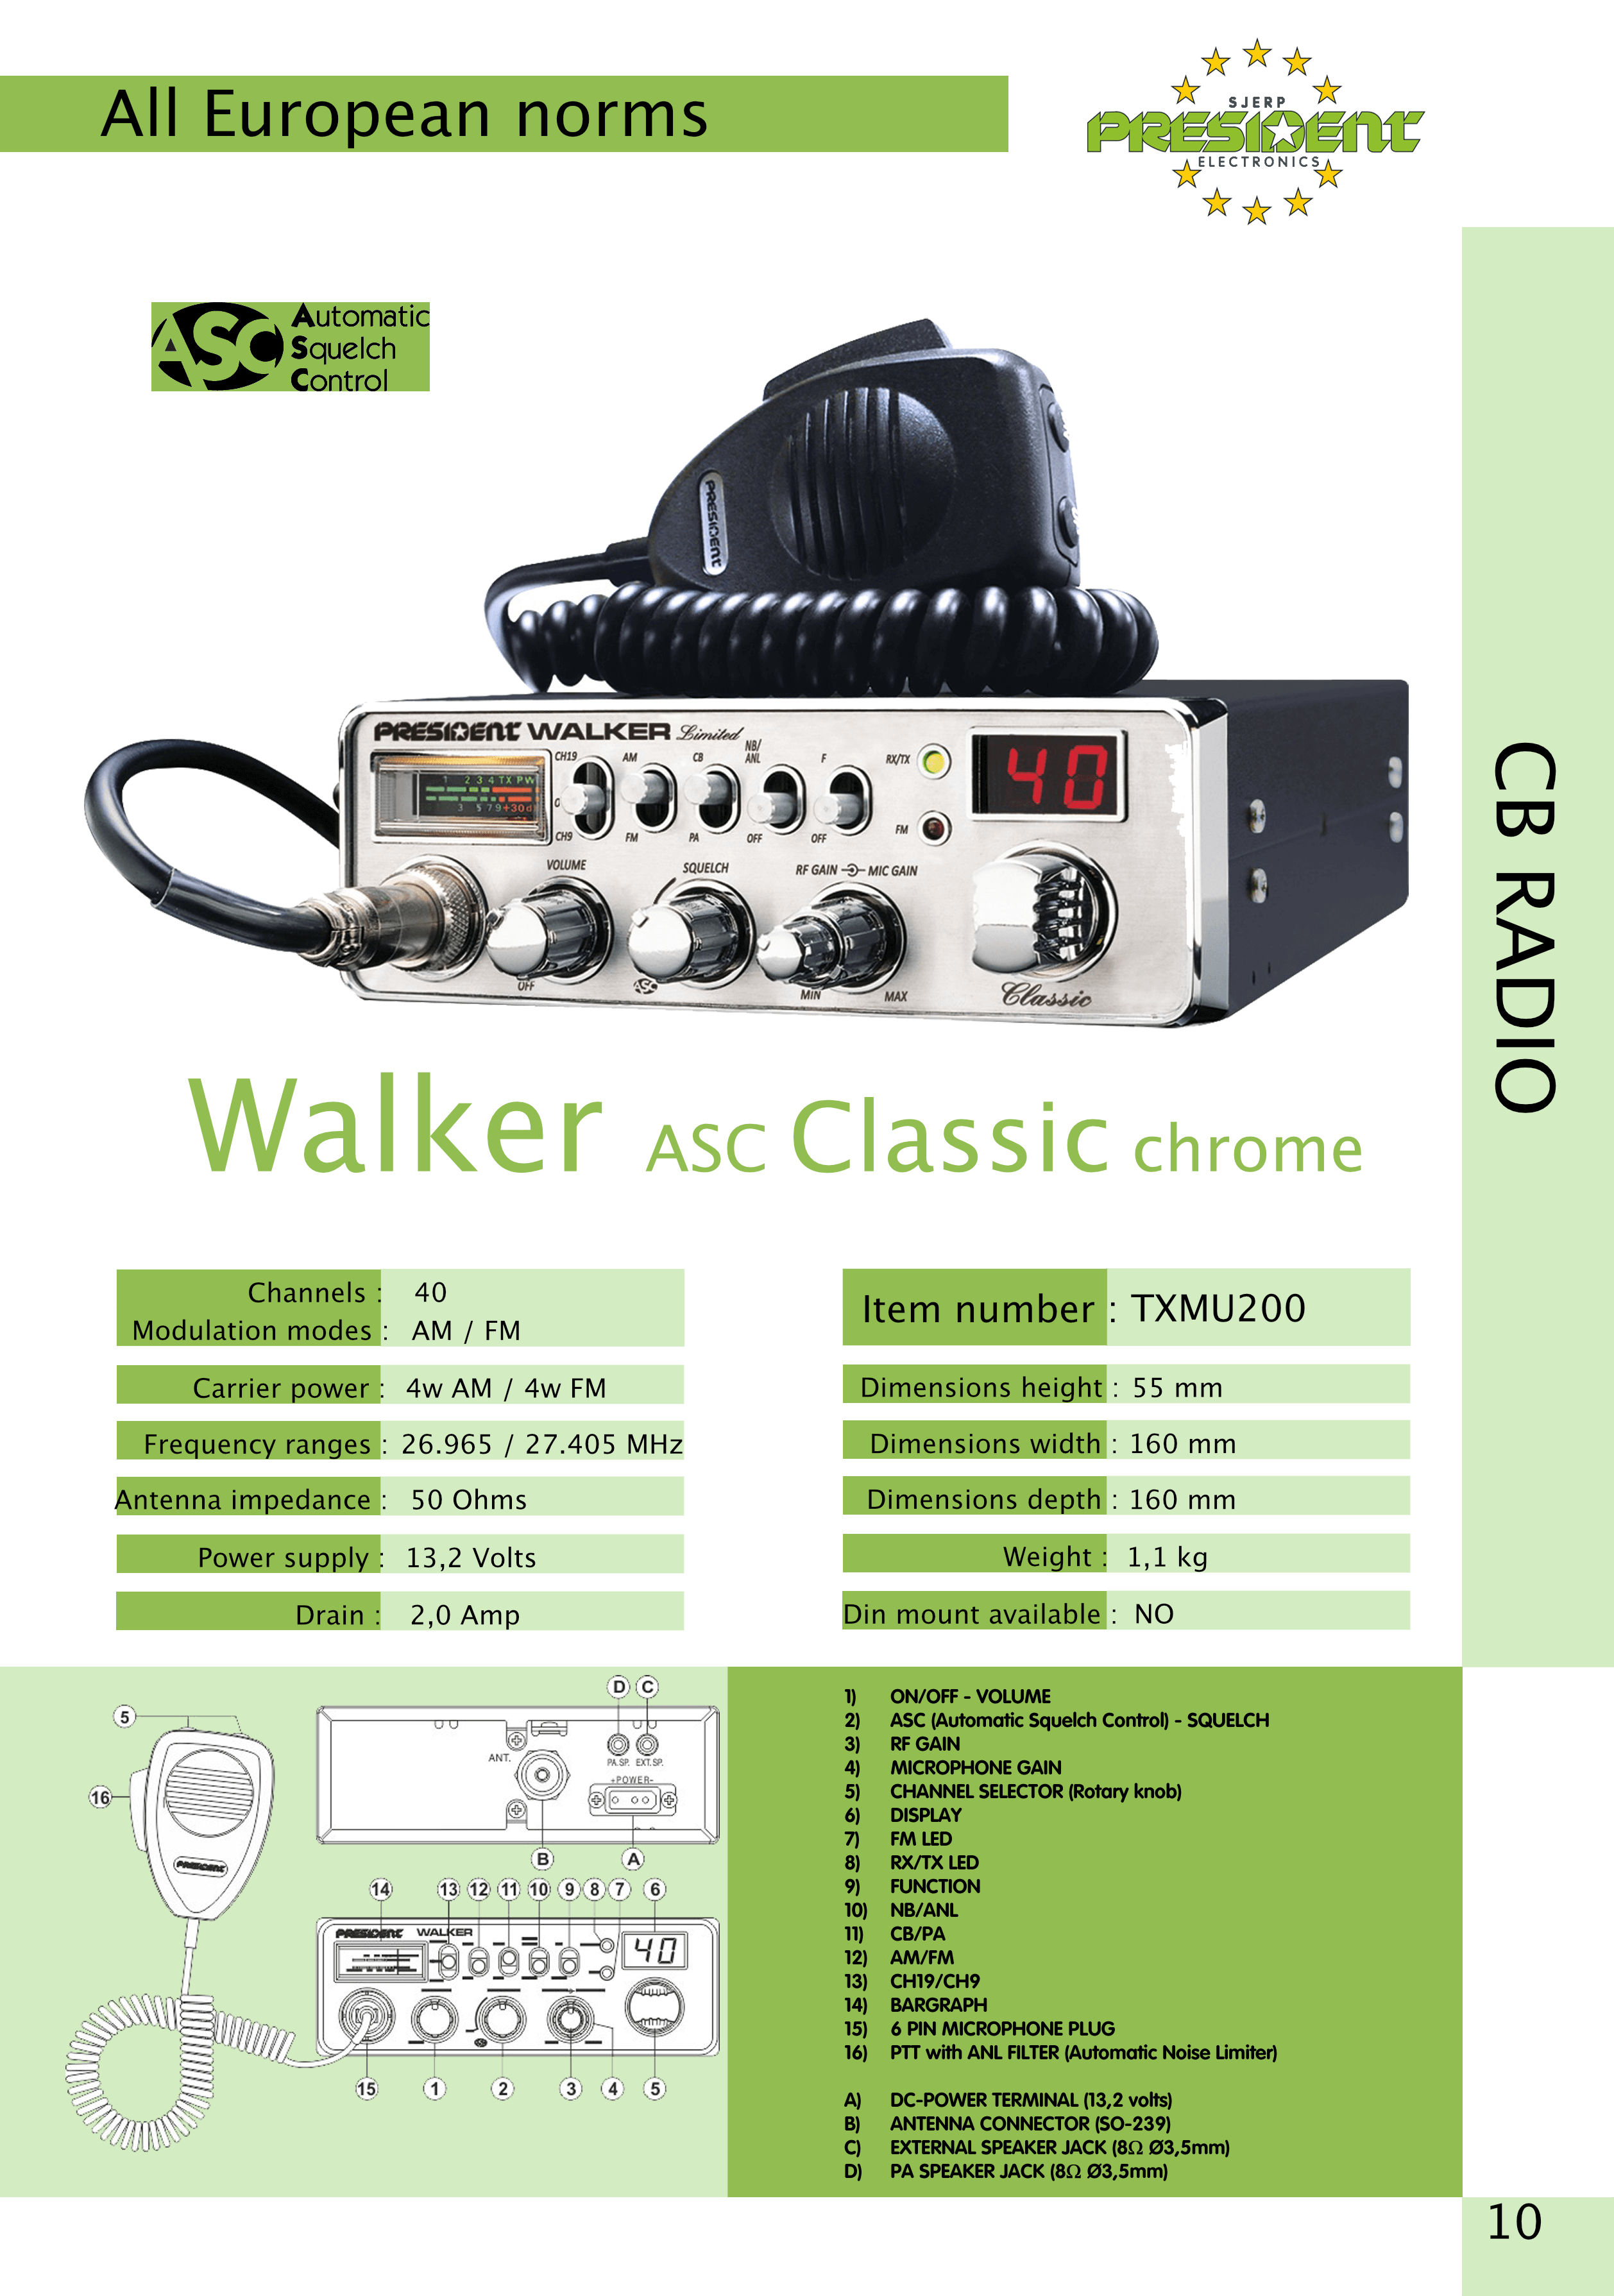 President Walker ASC Classic chrome